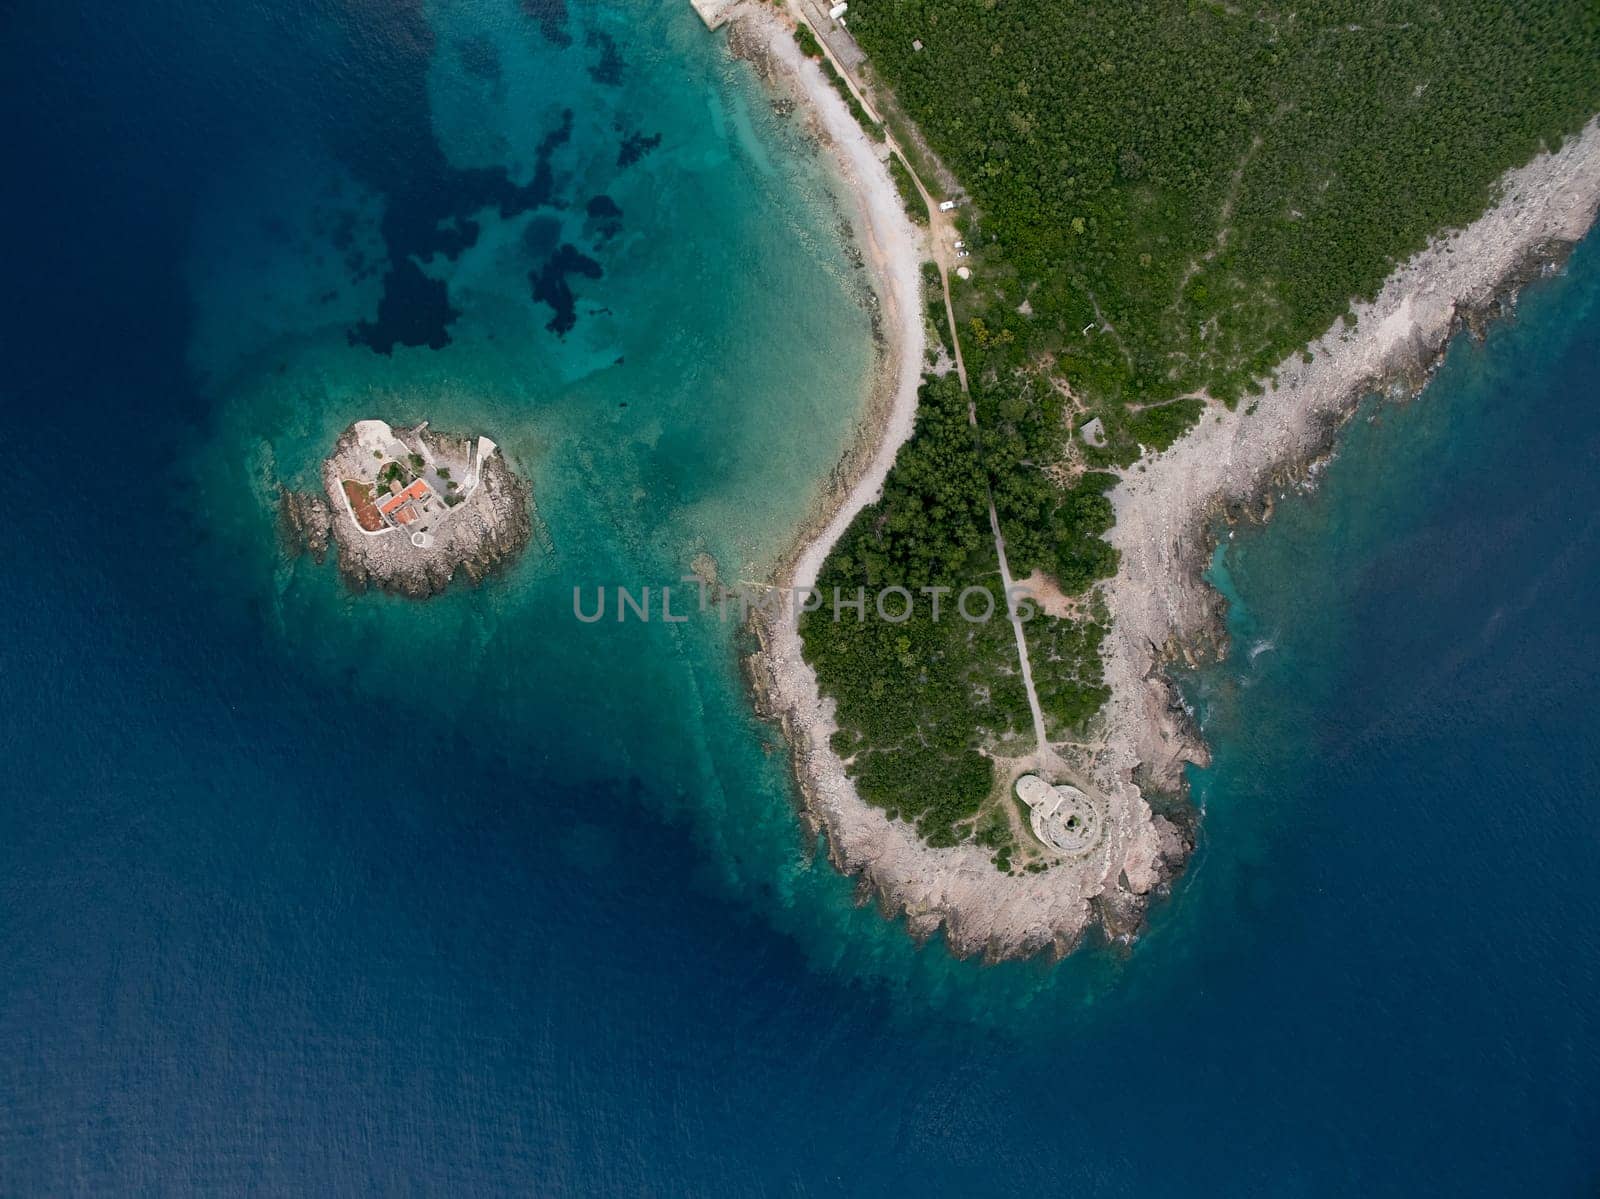 Otocic Gospa Island near the Mamula Peninsula. Montenegro. Drone by Nadtochiy